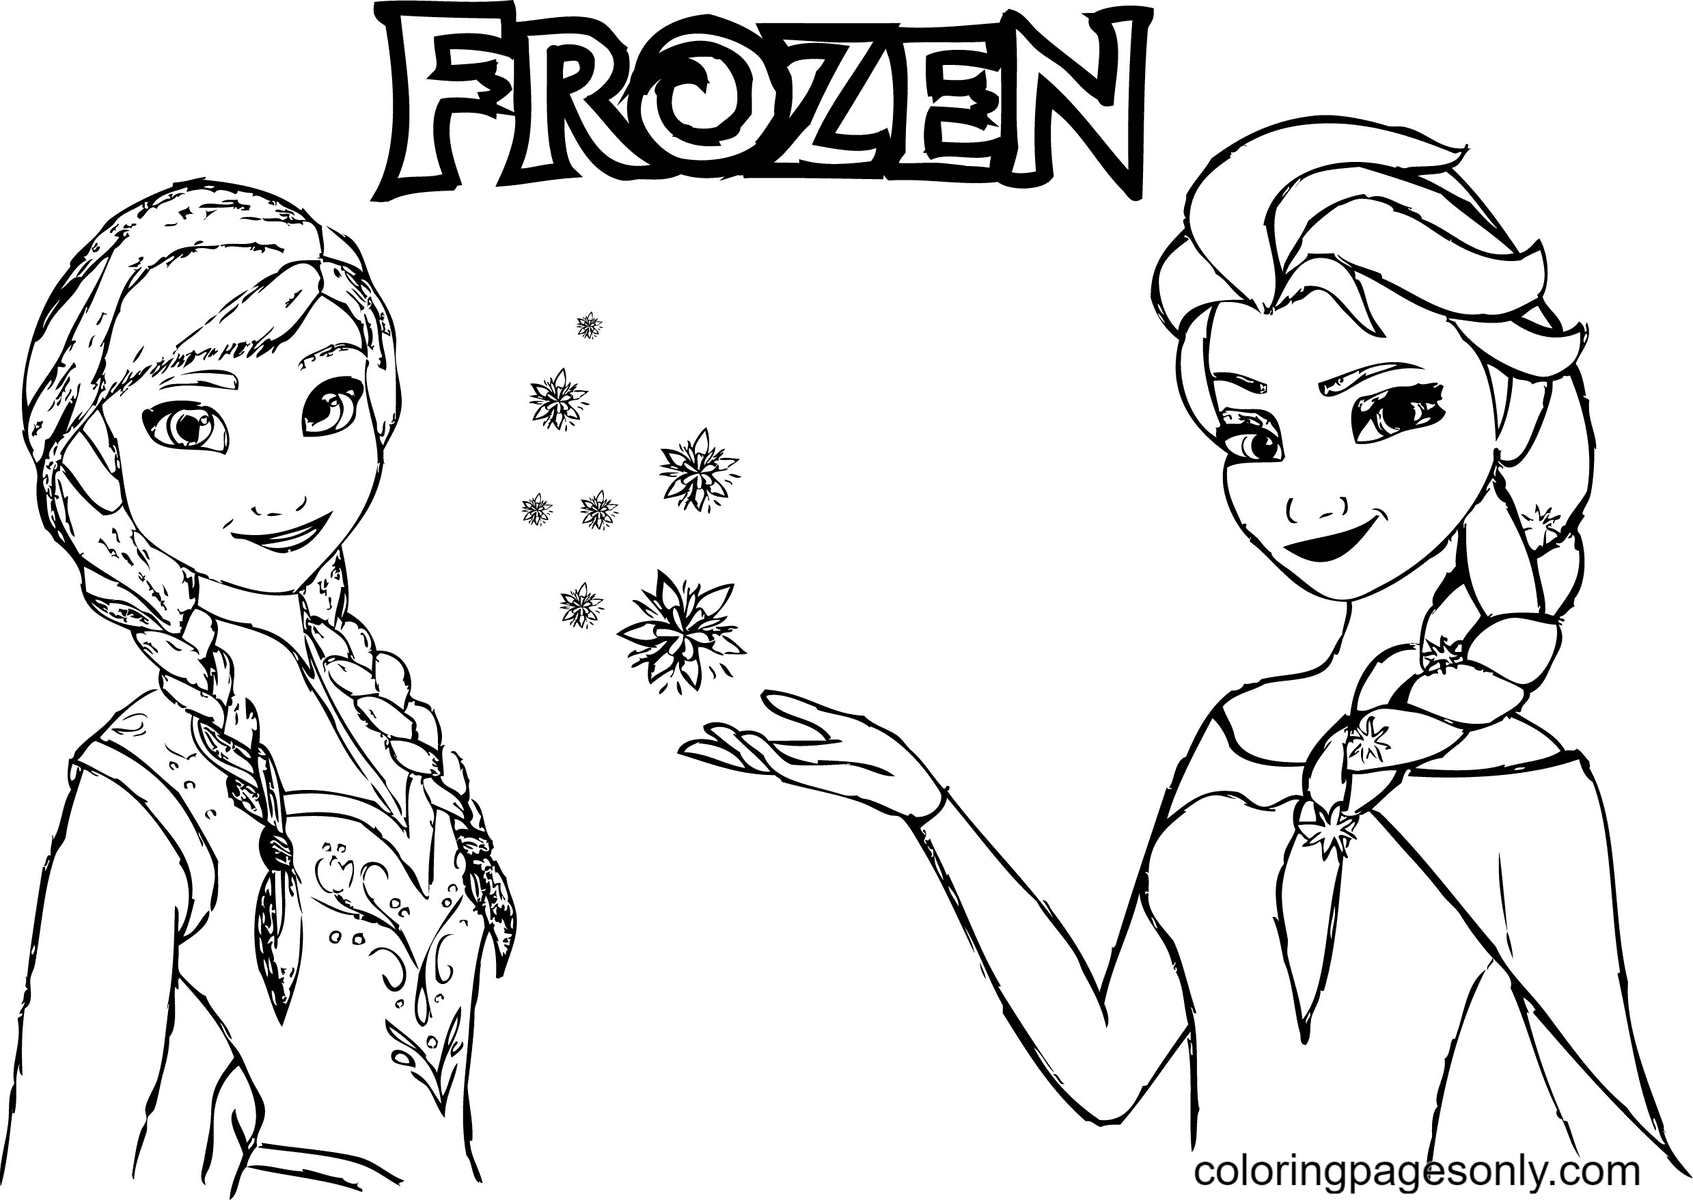 Disney Frozen Anna mit Elsa von Elsa und Anna